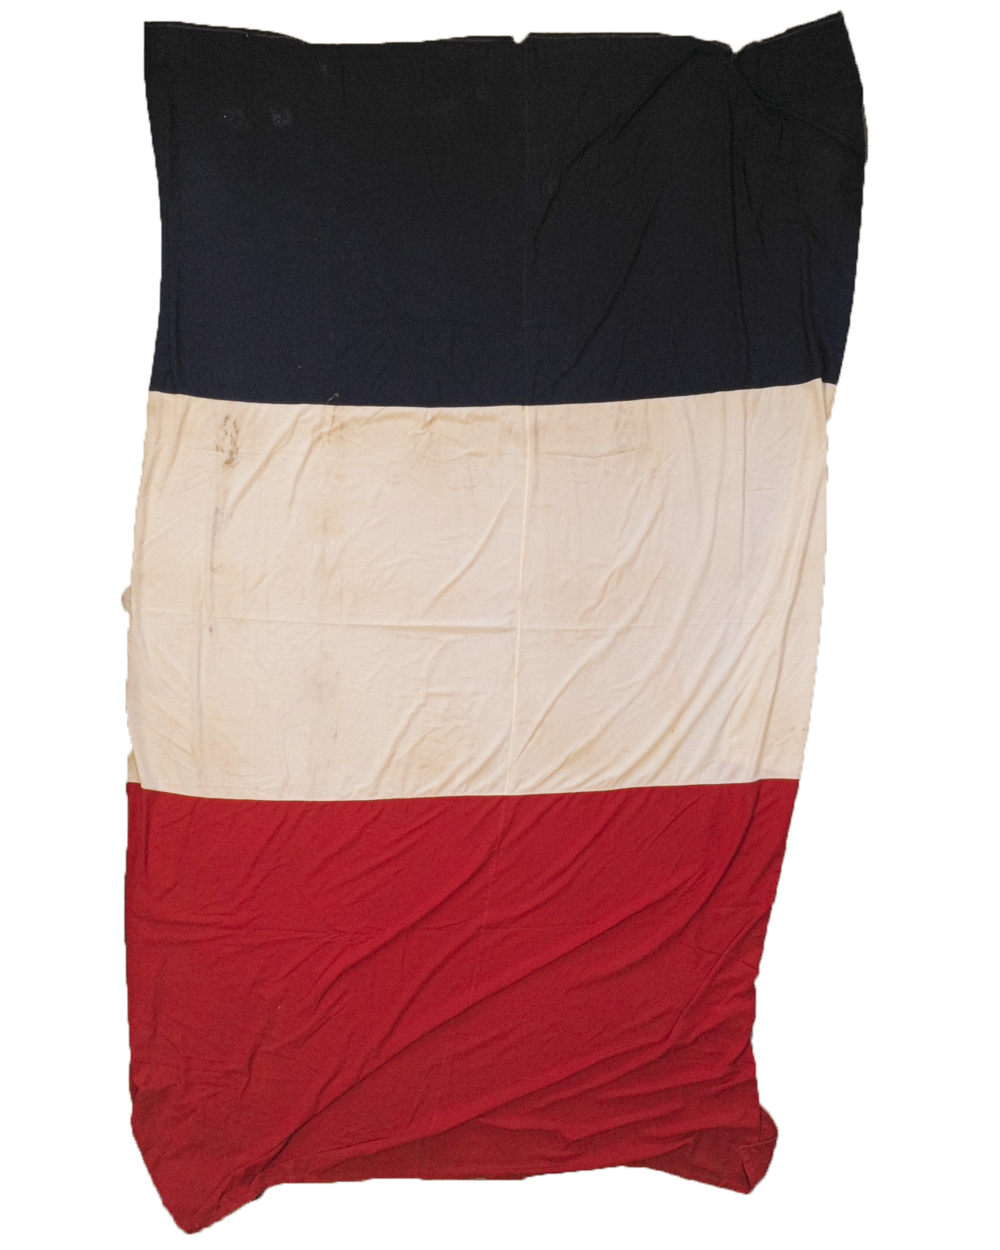 罕见的 1940 年代巨型法国国旗